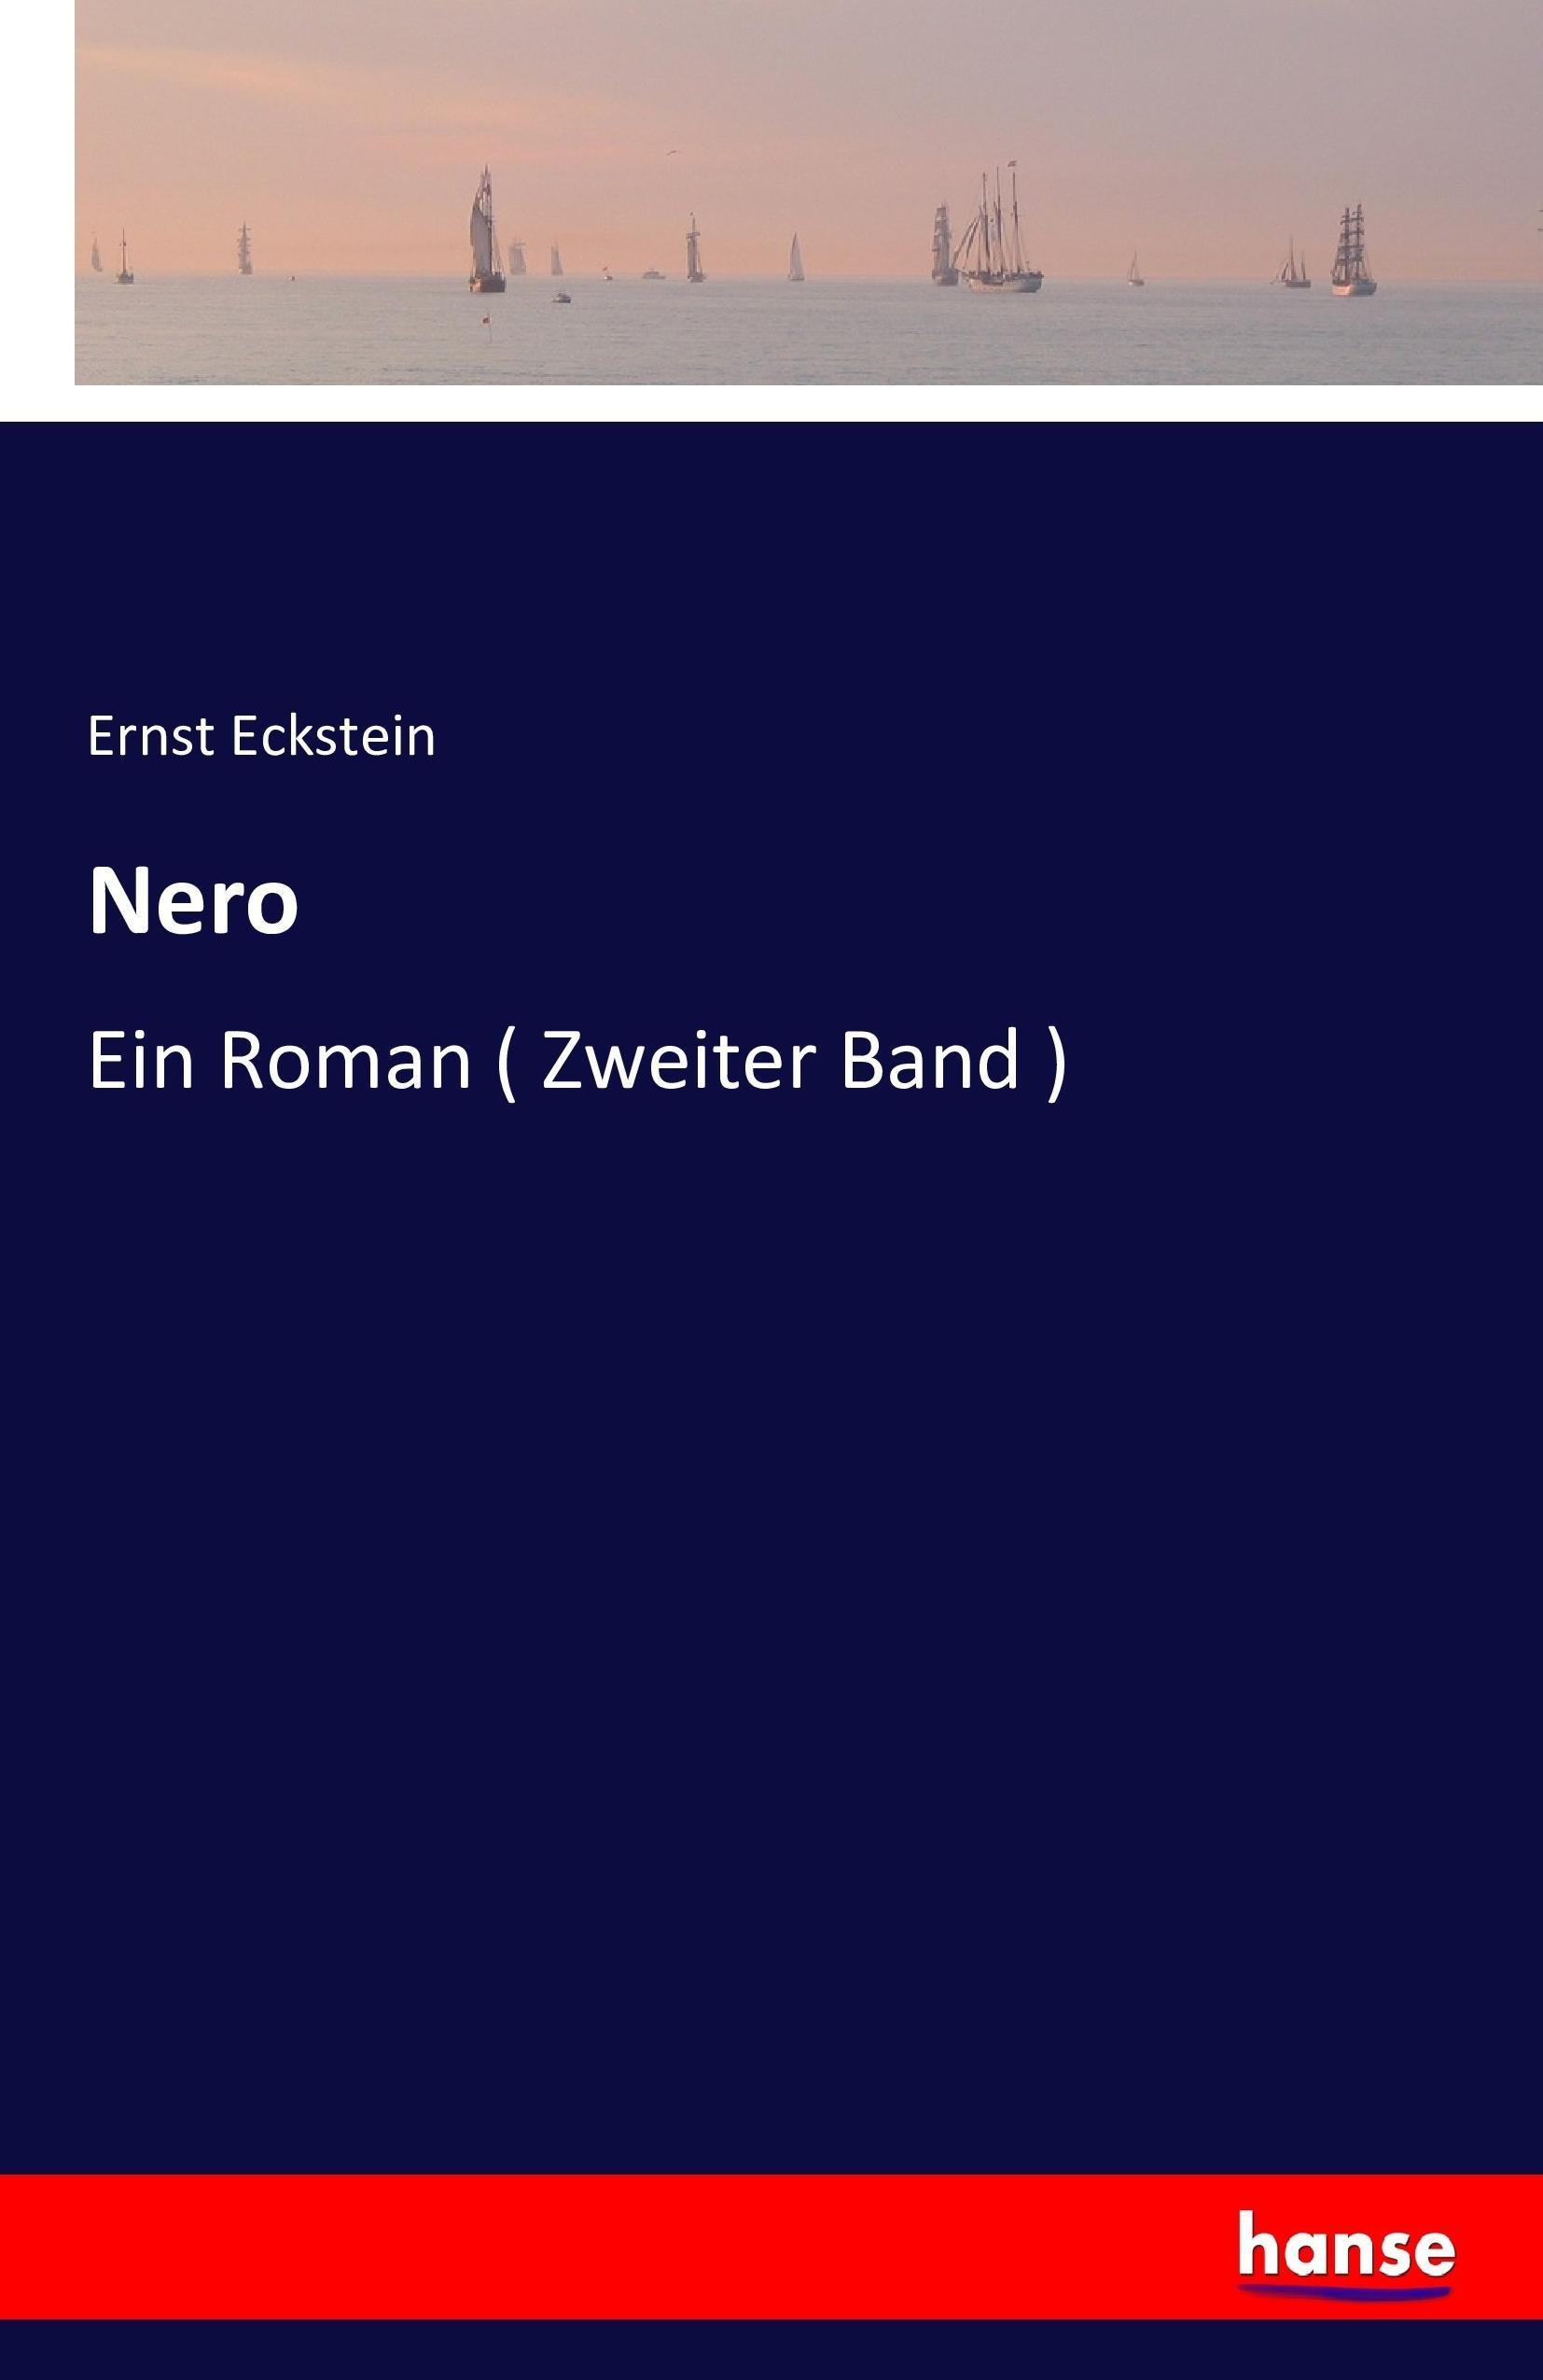 Nero | Ein Roman ( Zweiter Band ) | Ernst Eckstein | Taschenbuch | Paperback | 268 S. | Deutsch | 2016 | hansebooks | EAN 9783741192500 - Eckstein, Ernst